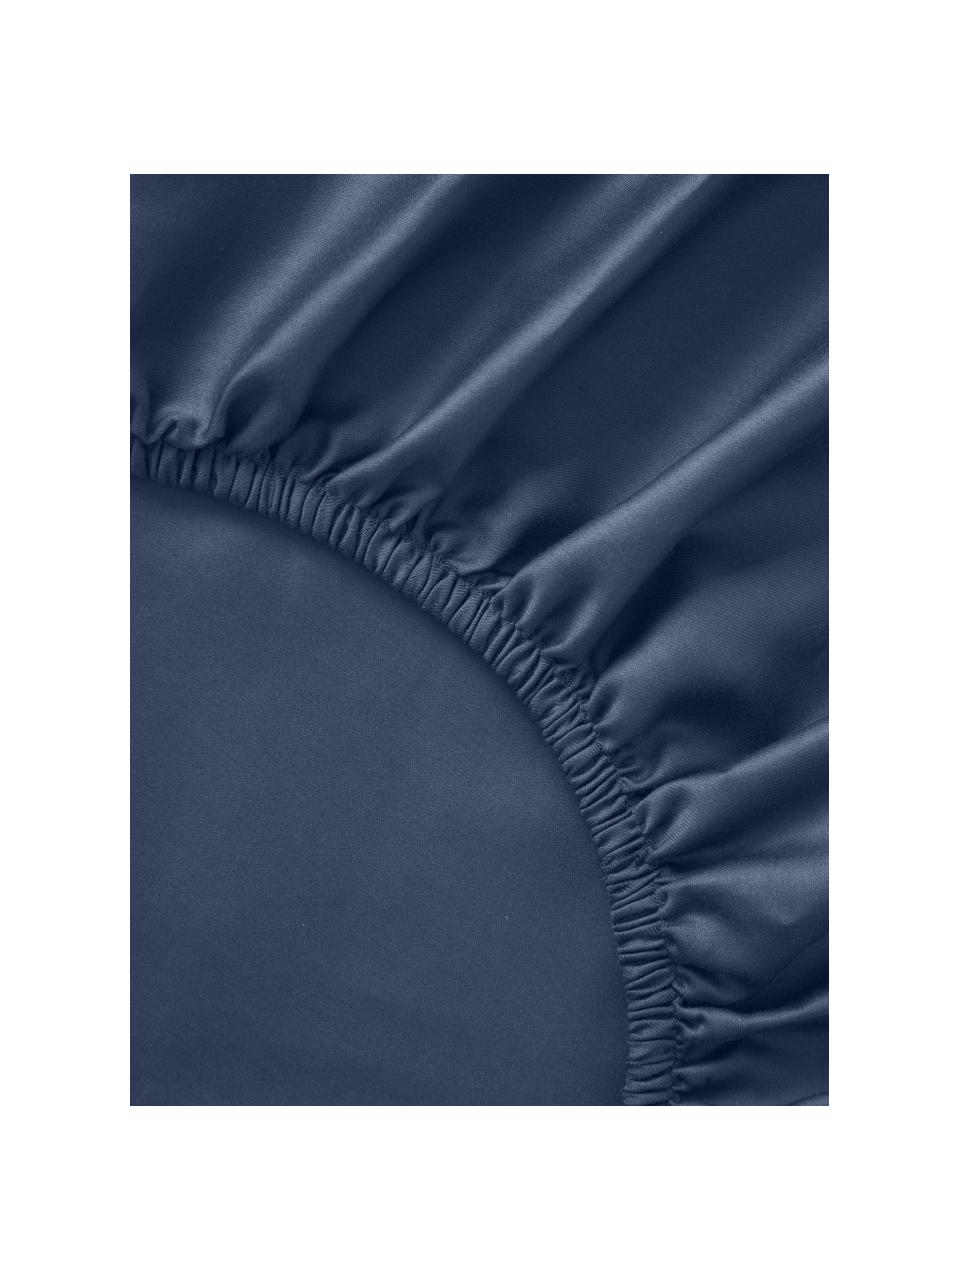 Drap-housse en satin de coton pour sommier tapissier Comfort, Bleu foncé, larg. 90 x long. 200 cm, haut. 35 cm